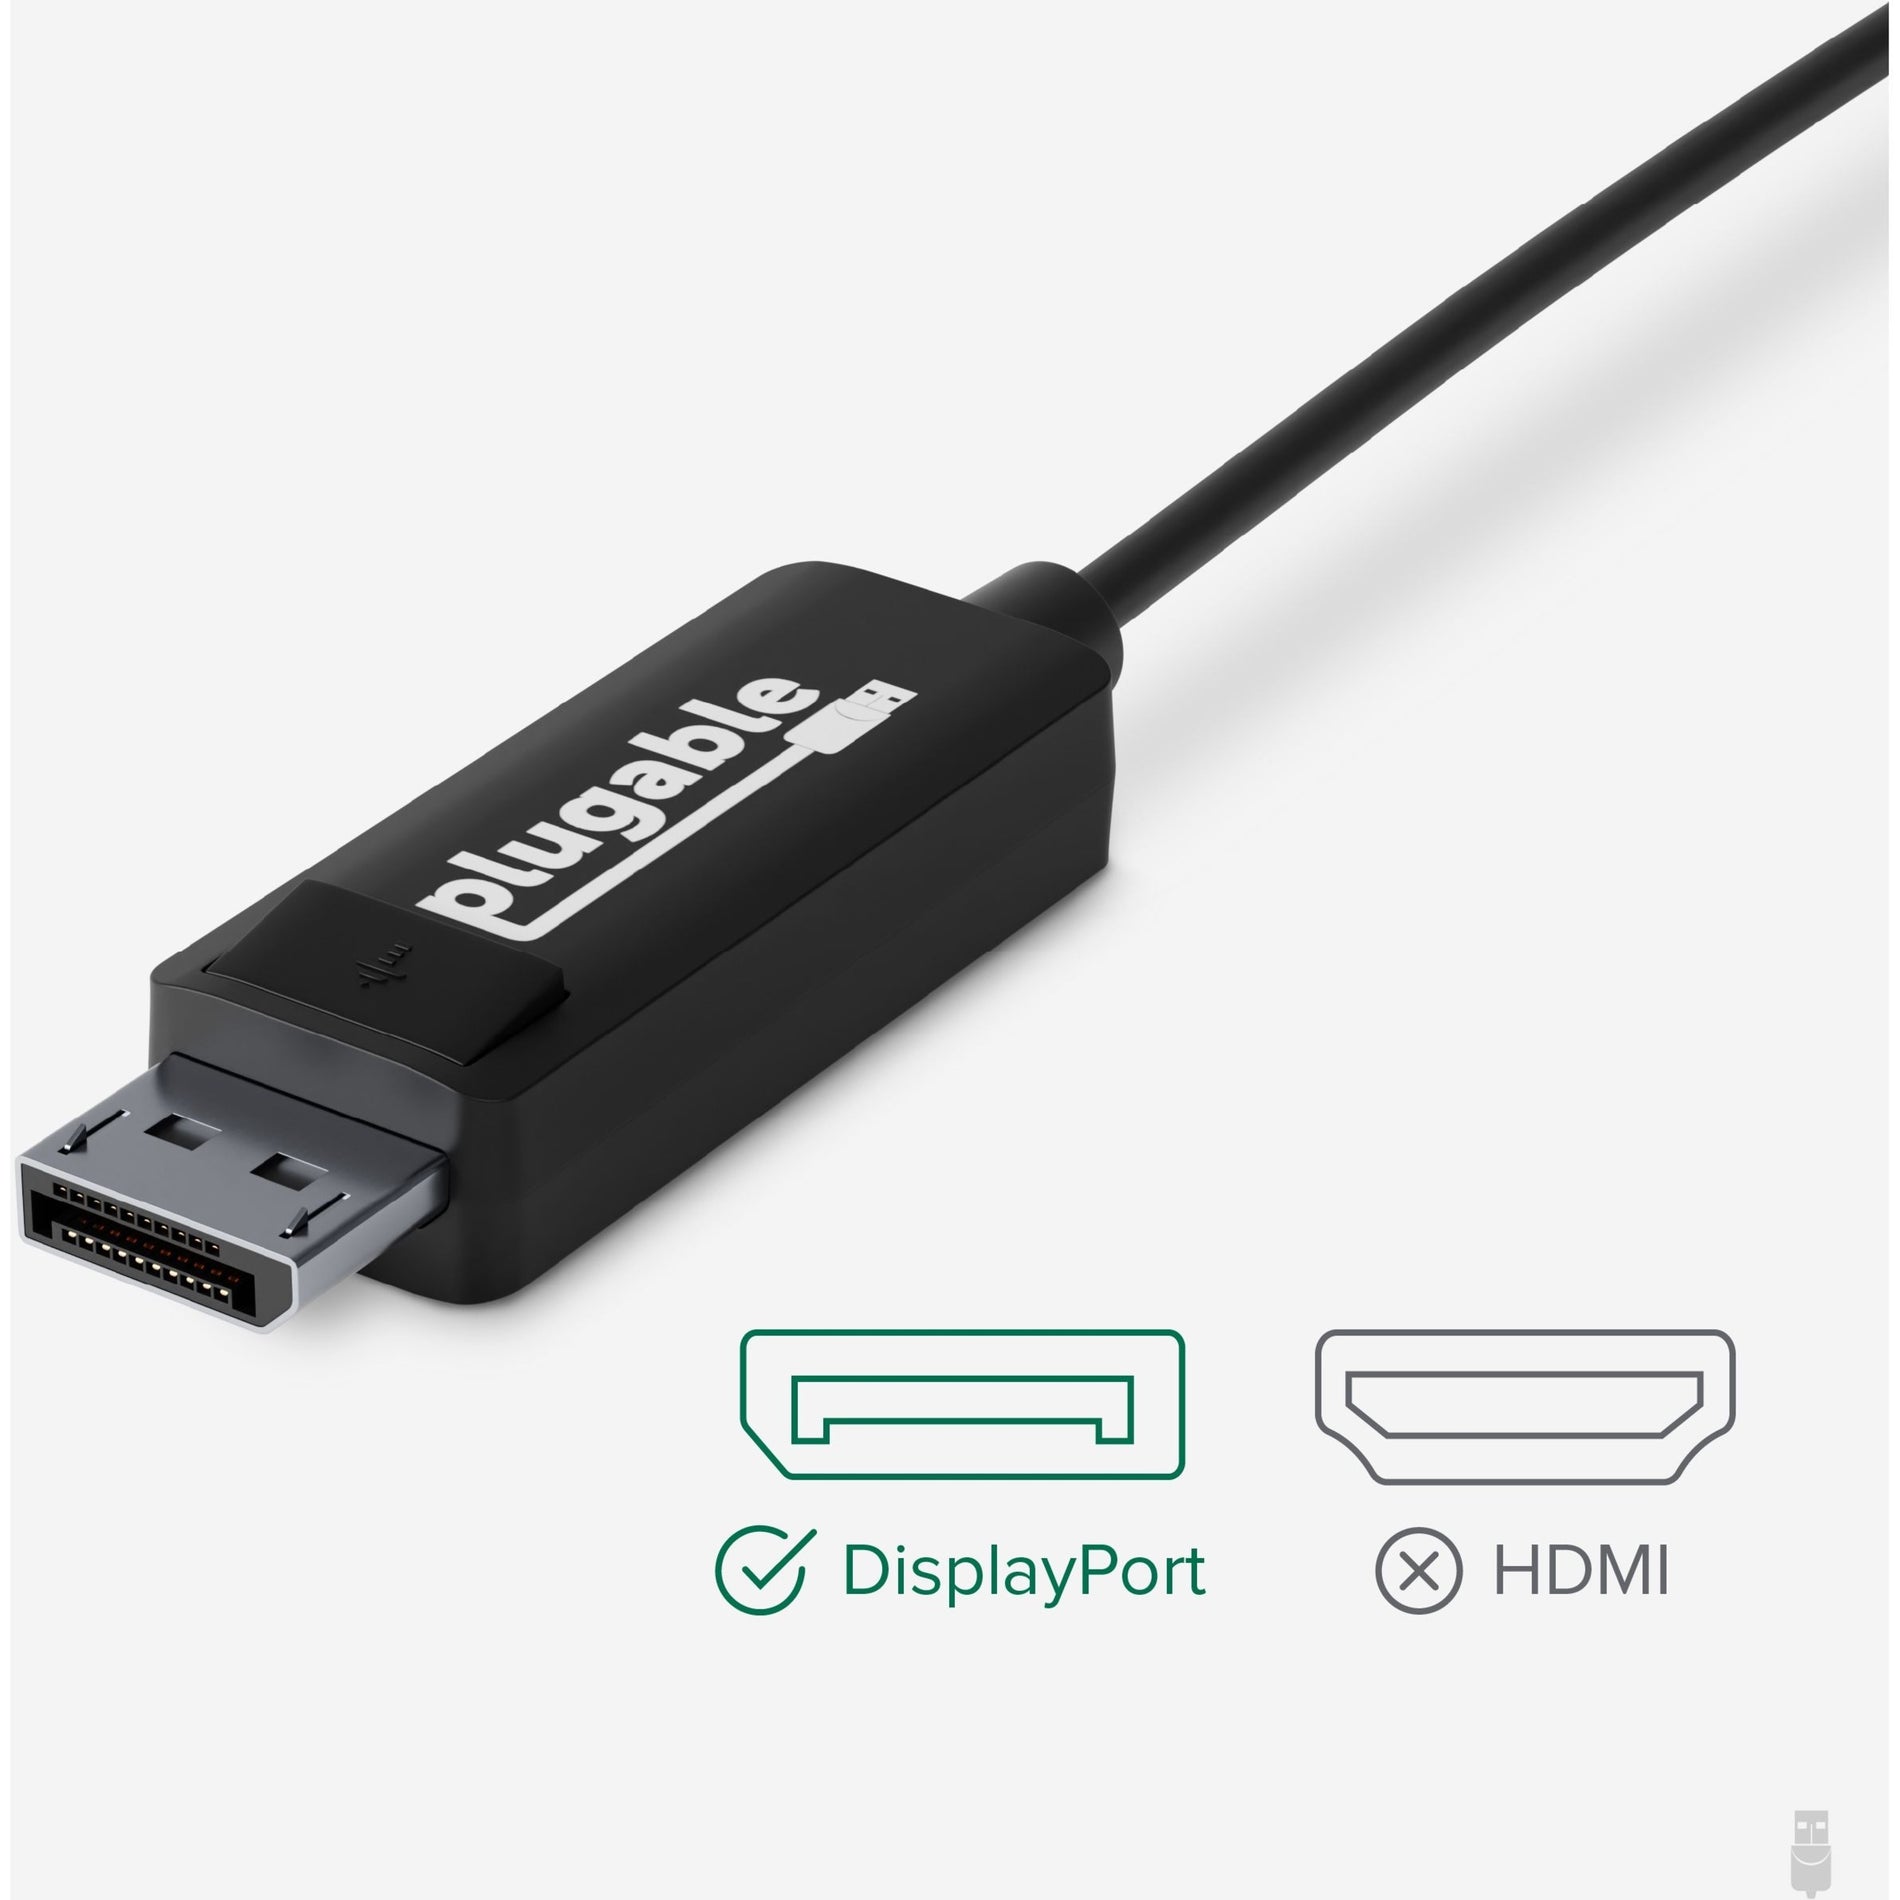 Cáp chuyển đổi USB-C sang DisplayPort Plugable USBC-DP 6 ft - Kết nối các thiết bị của bạn một cách dễ dàng